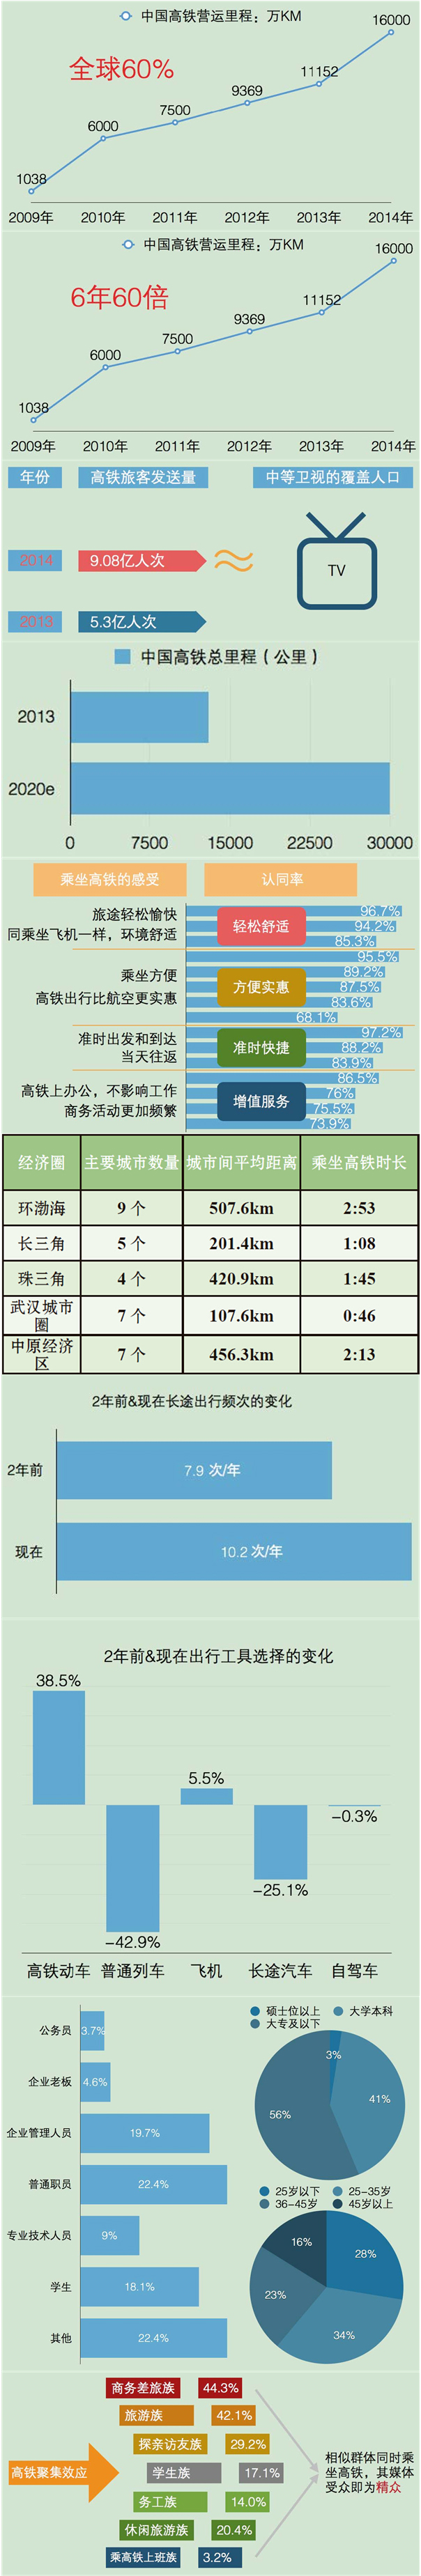 数据解析中国高铁成就及高铁媒体价值 3.jpg